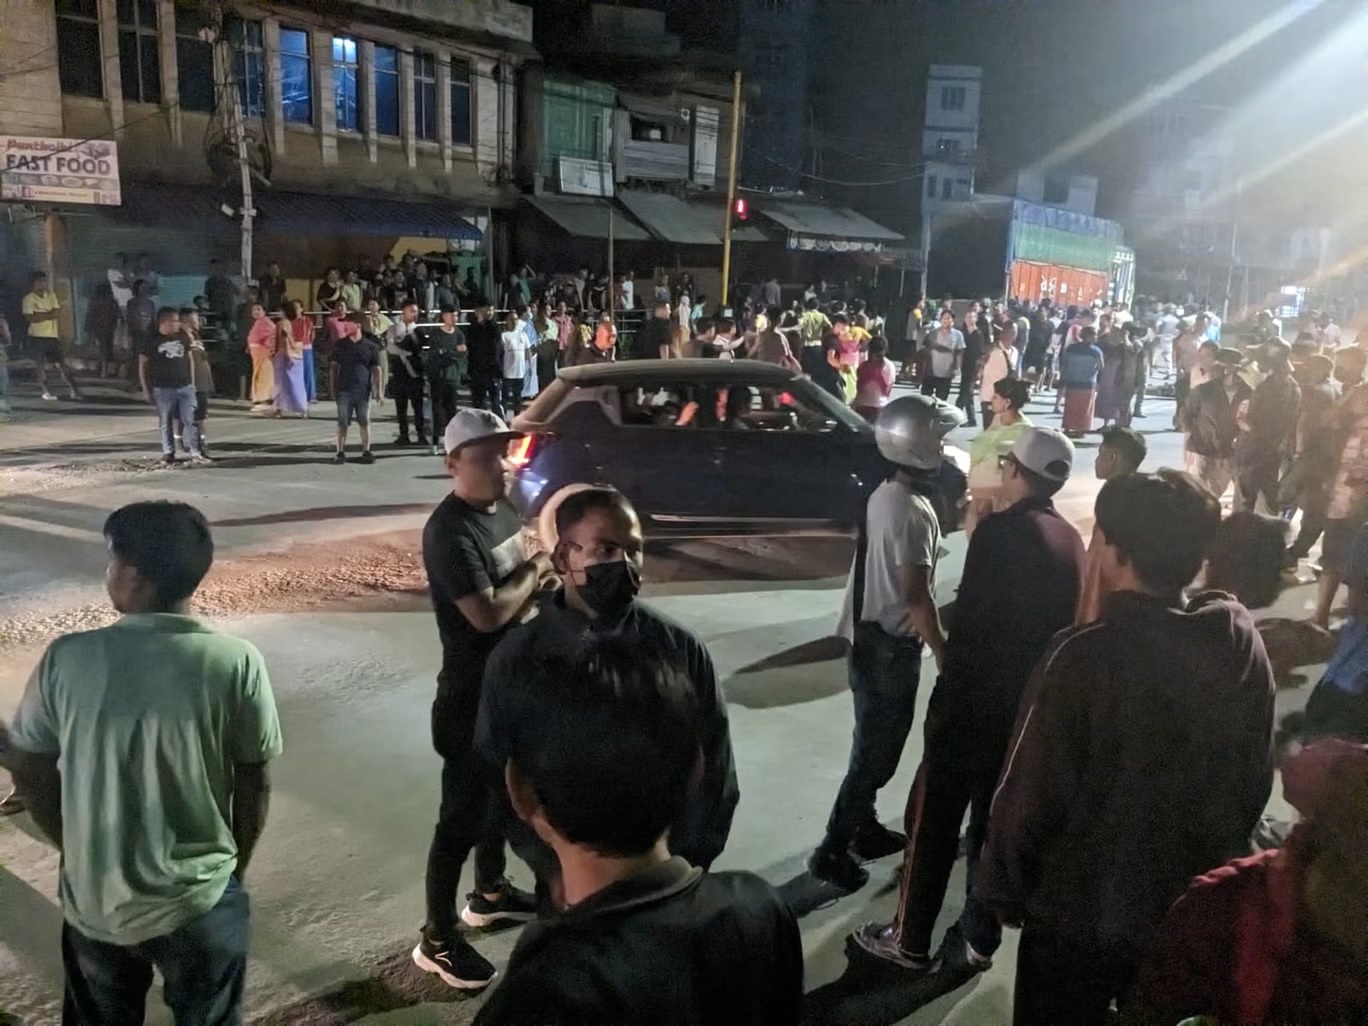 أفراد من مجموعة "ميتي" محتشدون في مالوم بعد ورود أخبار تزعم قيام الجيش بتهريب نساء من بنات مجموعة "كوكي" (ناميتا سينغ/اندبندنت)